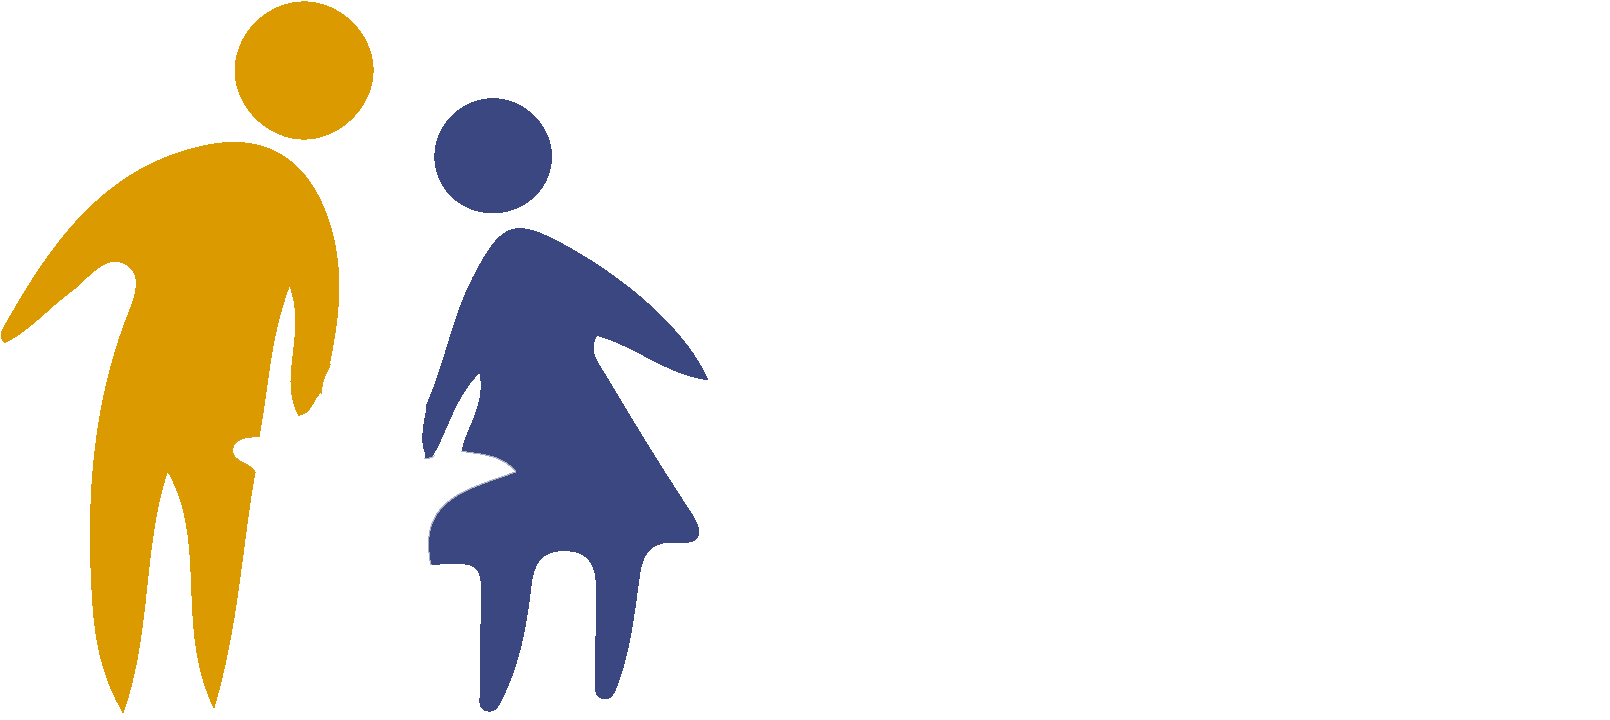 Rockingham Family Charities - Rockingham Family Charities (1920x1080)